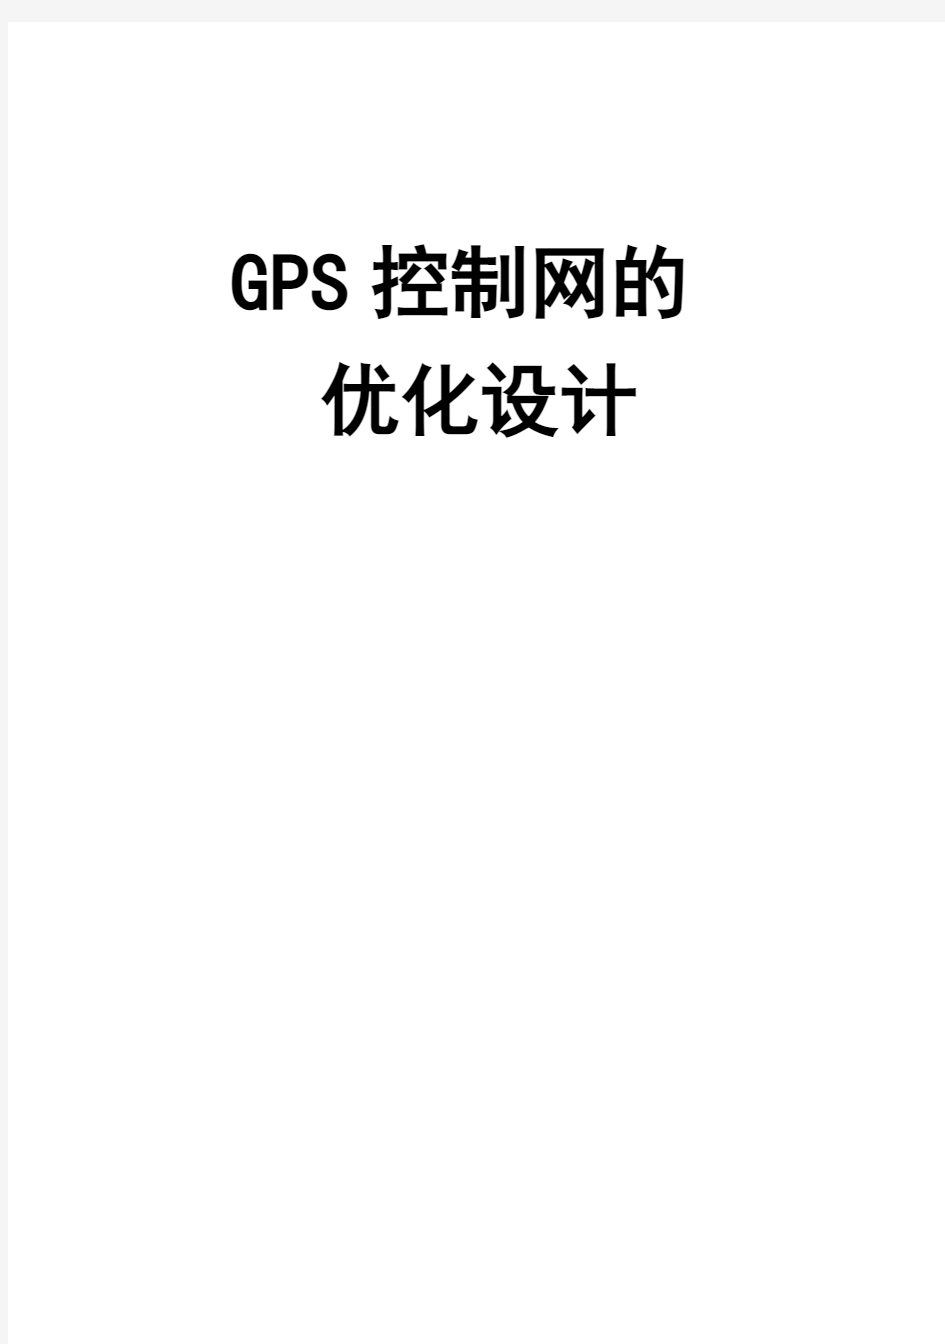 (完整版)GPS控制网的优化设计毕业设计